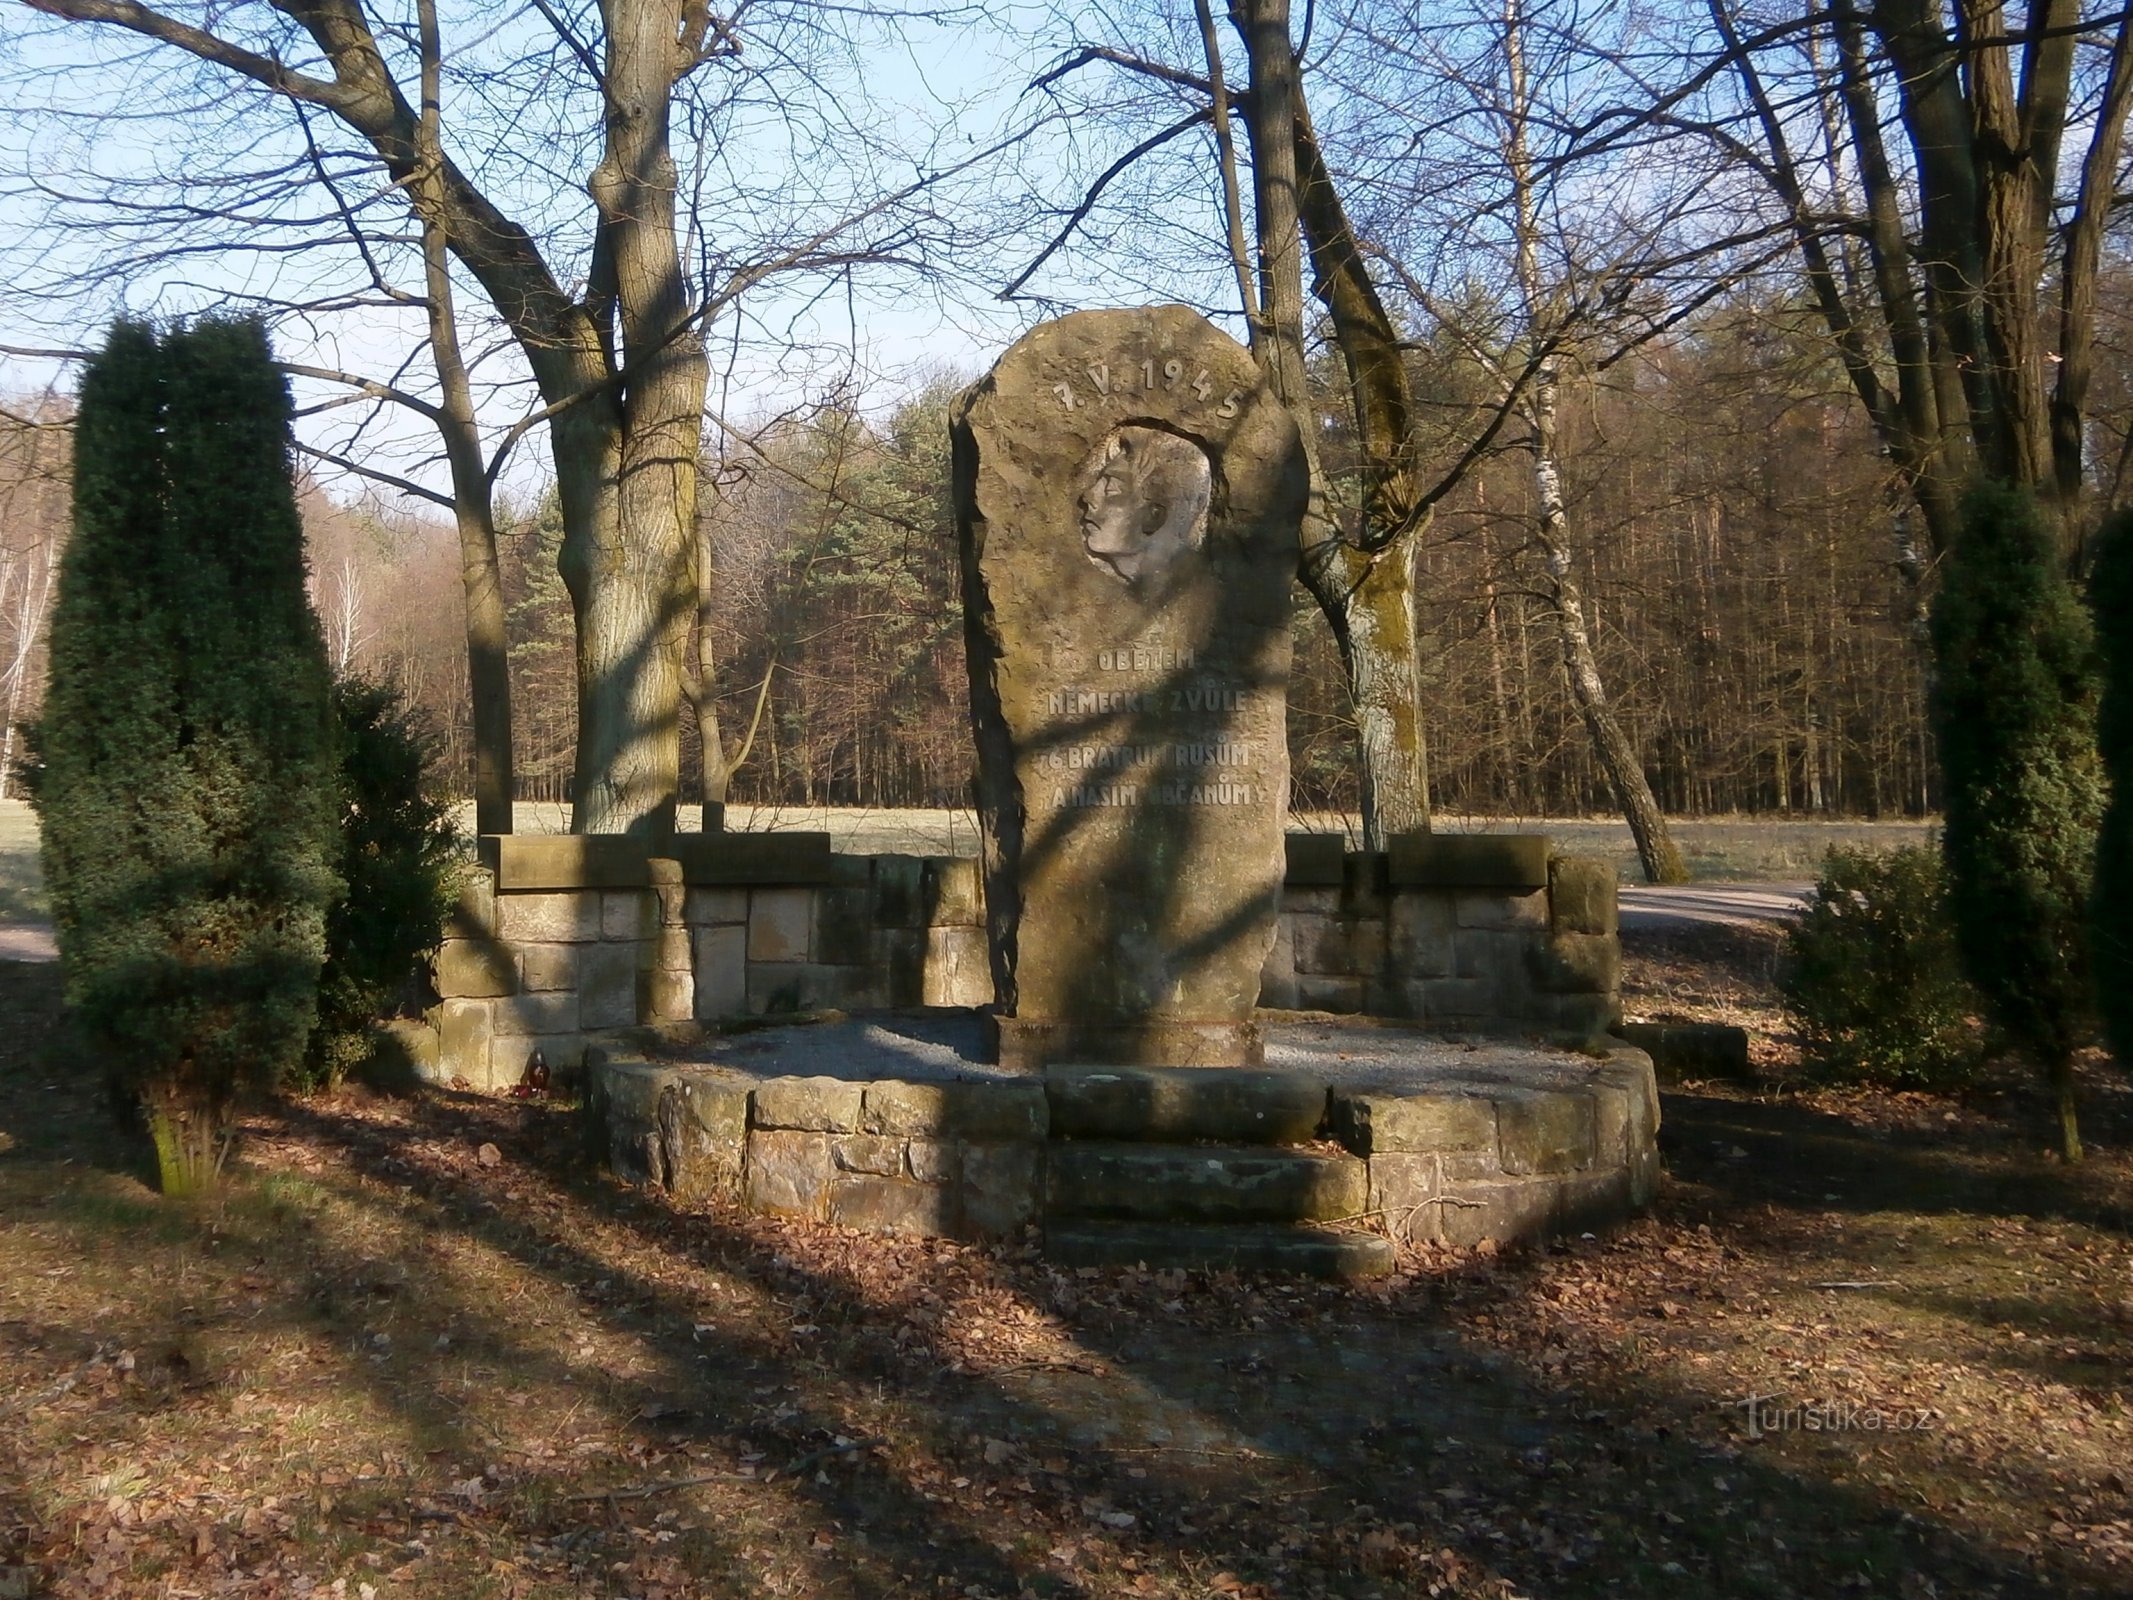 Monument voor de slachtoffers van de Tweede Wereldoorlog (Vysoká nad Labem, 2/24.3.2017/XNUMX)